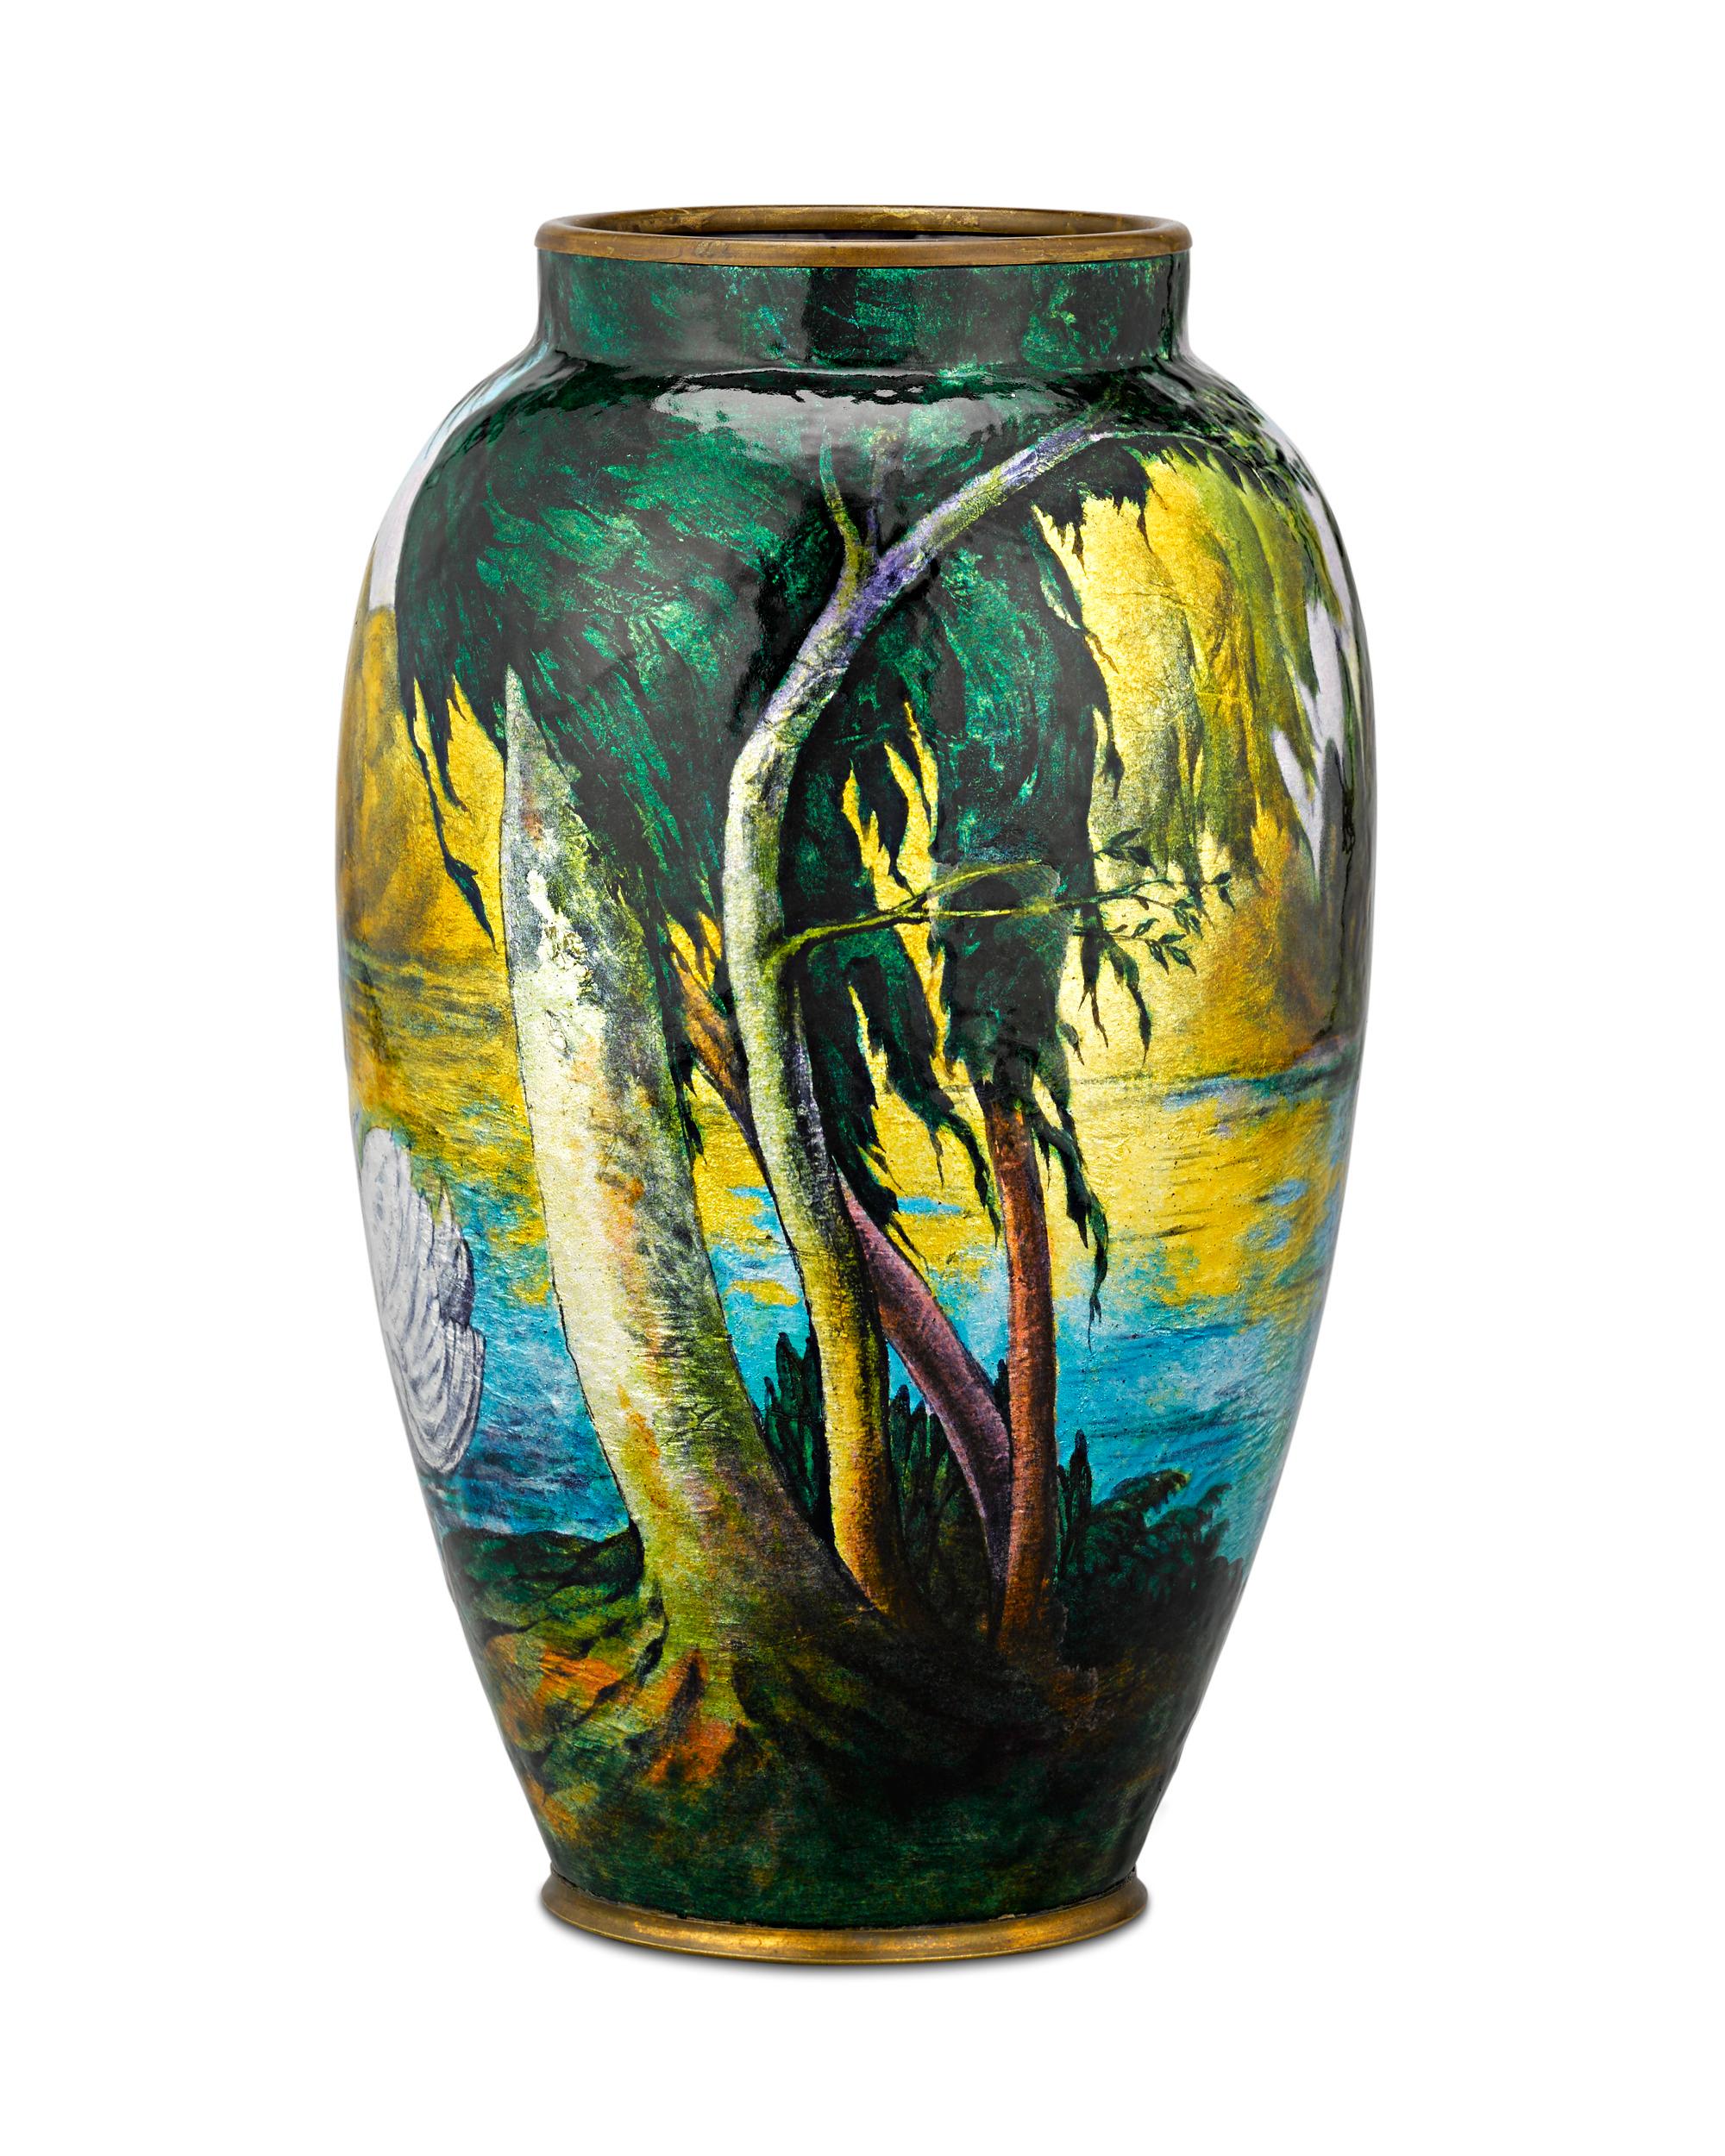 Un couple de cygnes gracieux orne la forme de ce vase vibrant du grand Camille Fauré. L'artiste émailleur français est surtout connu pour ses créations hautement sculpturales qui superposent l'émail à une forme de base en cuivre. Le résultat est une